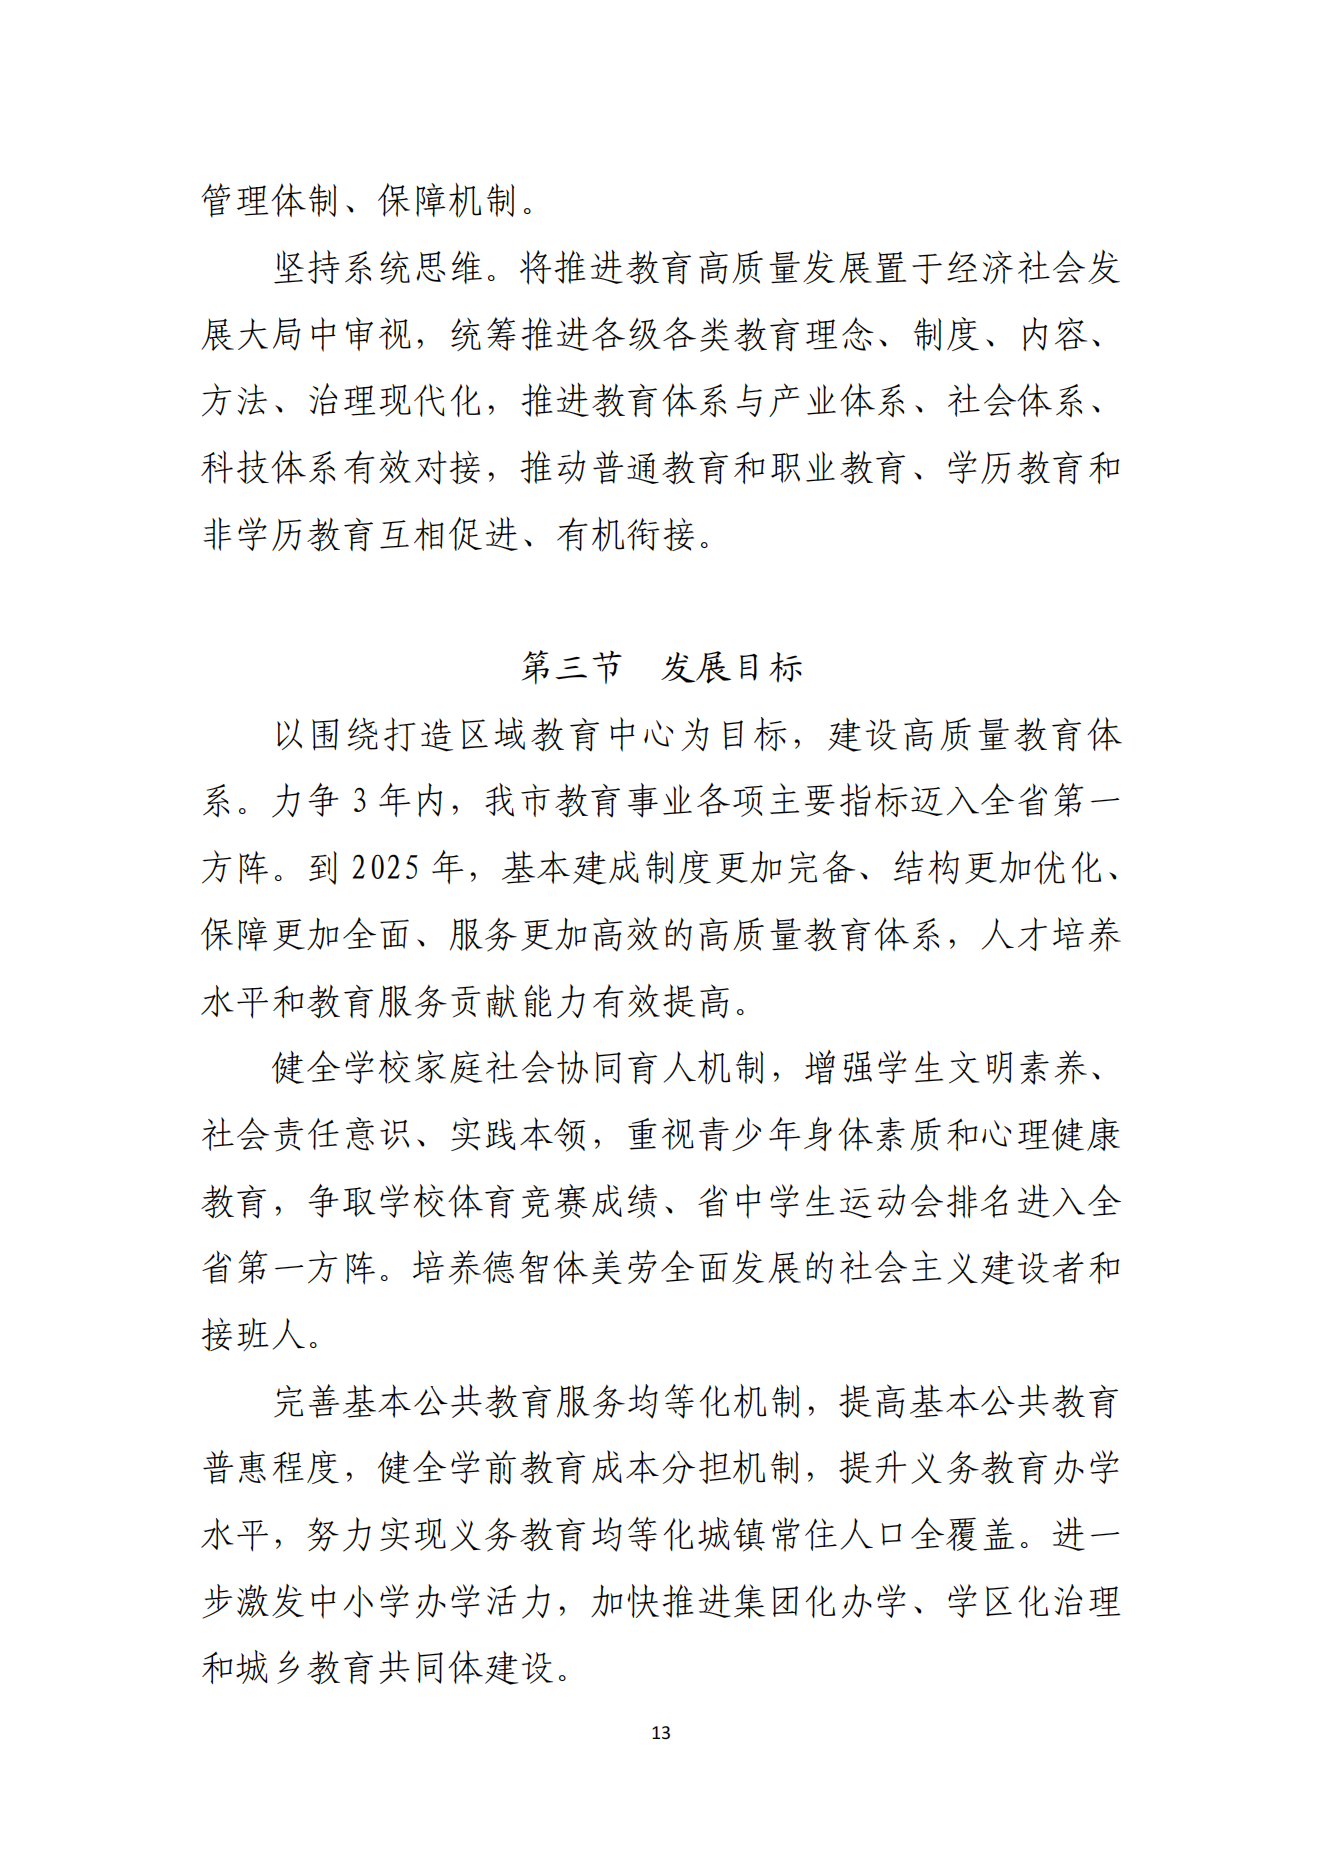 湛江市人民政府办公室关于印发湛江市教育发展“十四五”规划的通知_12.png